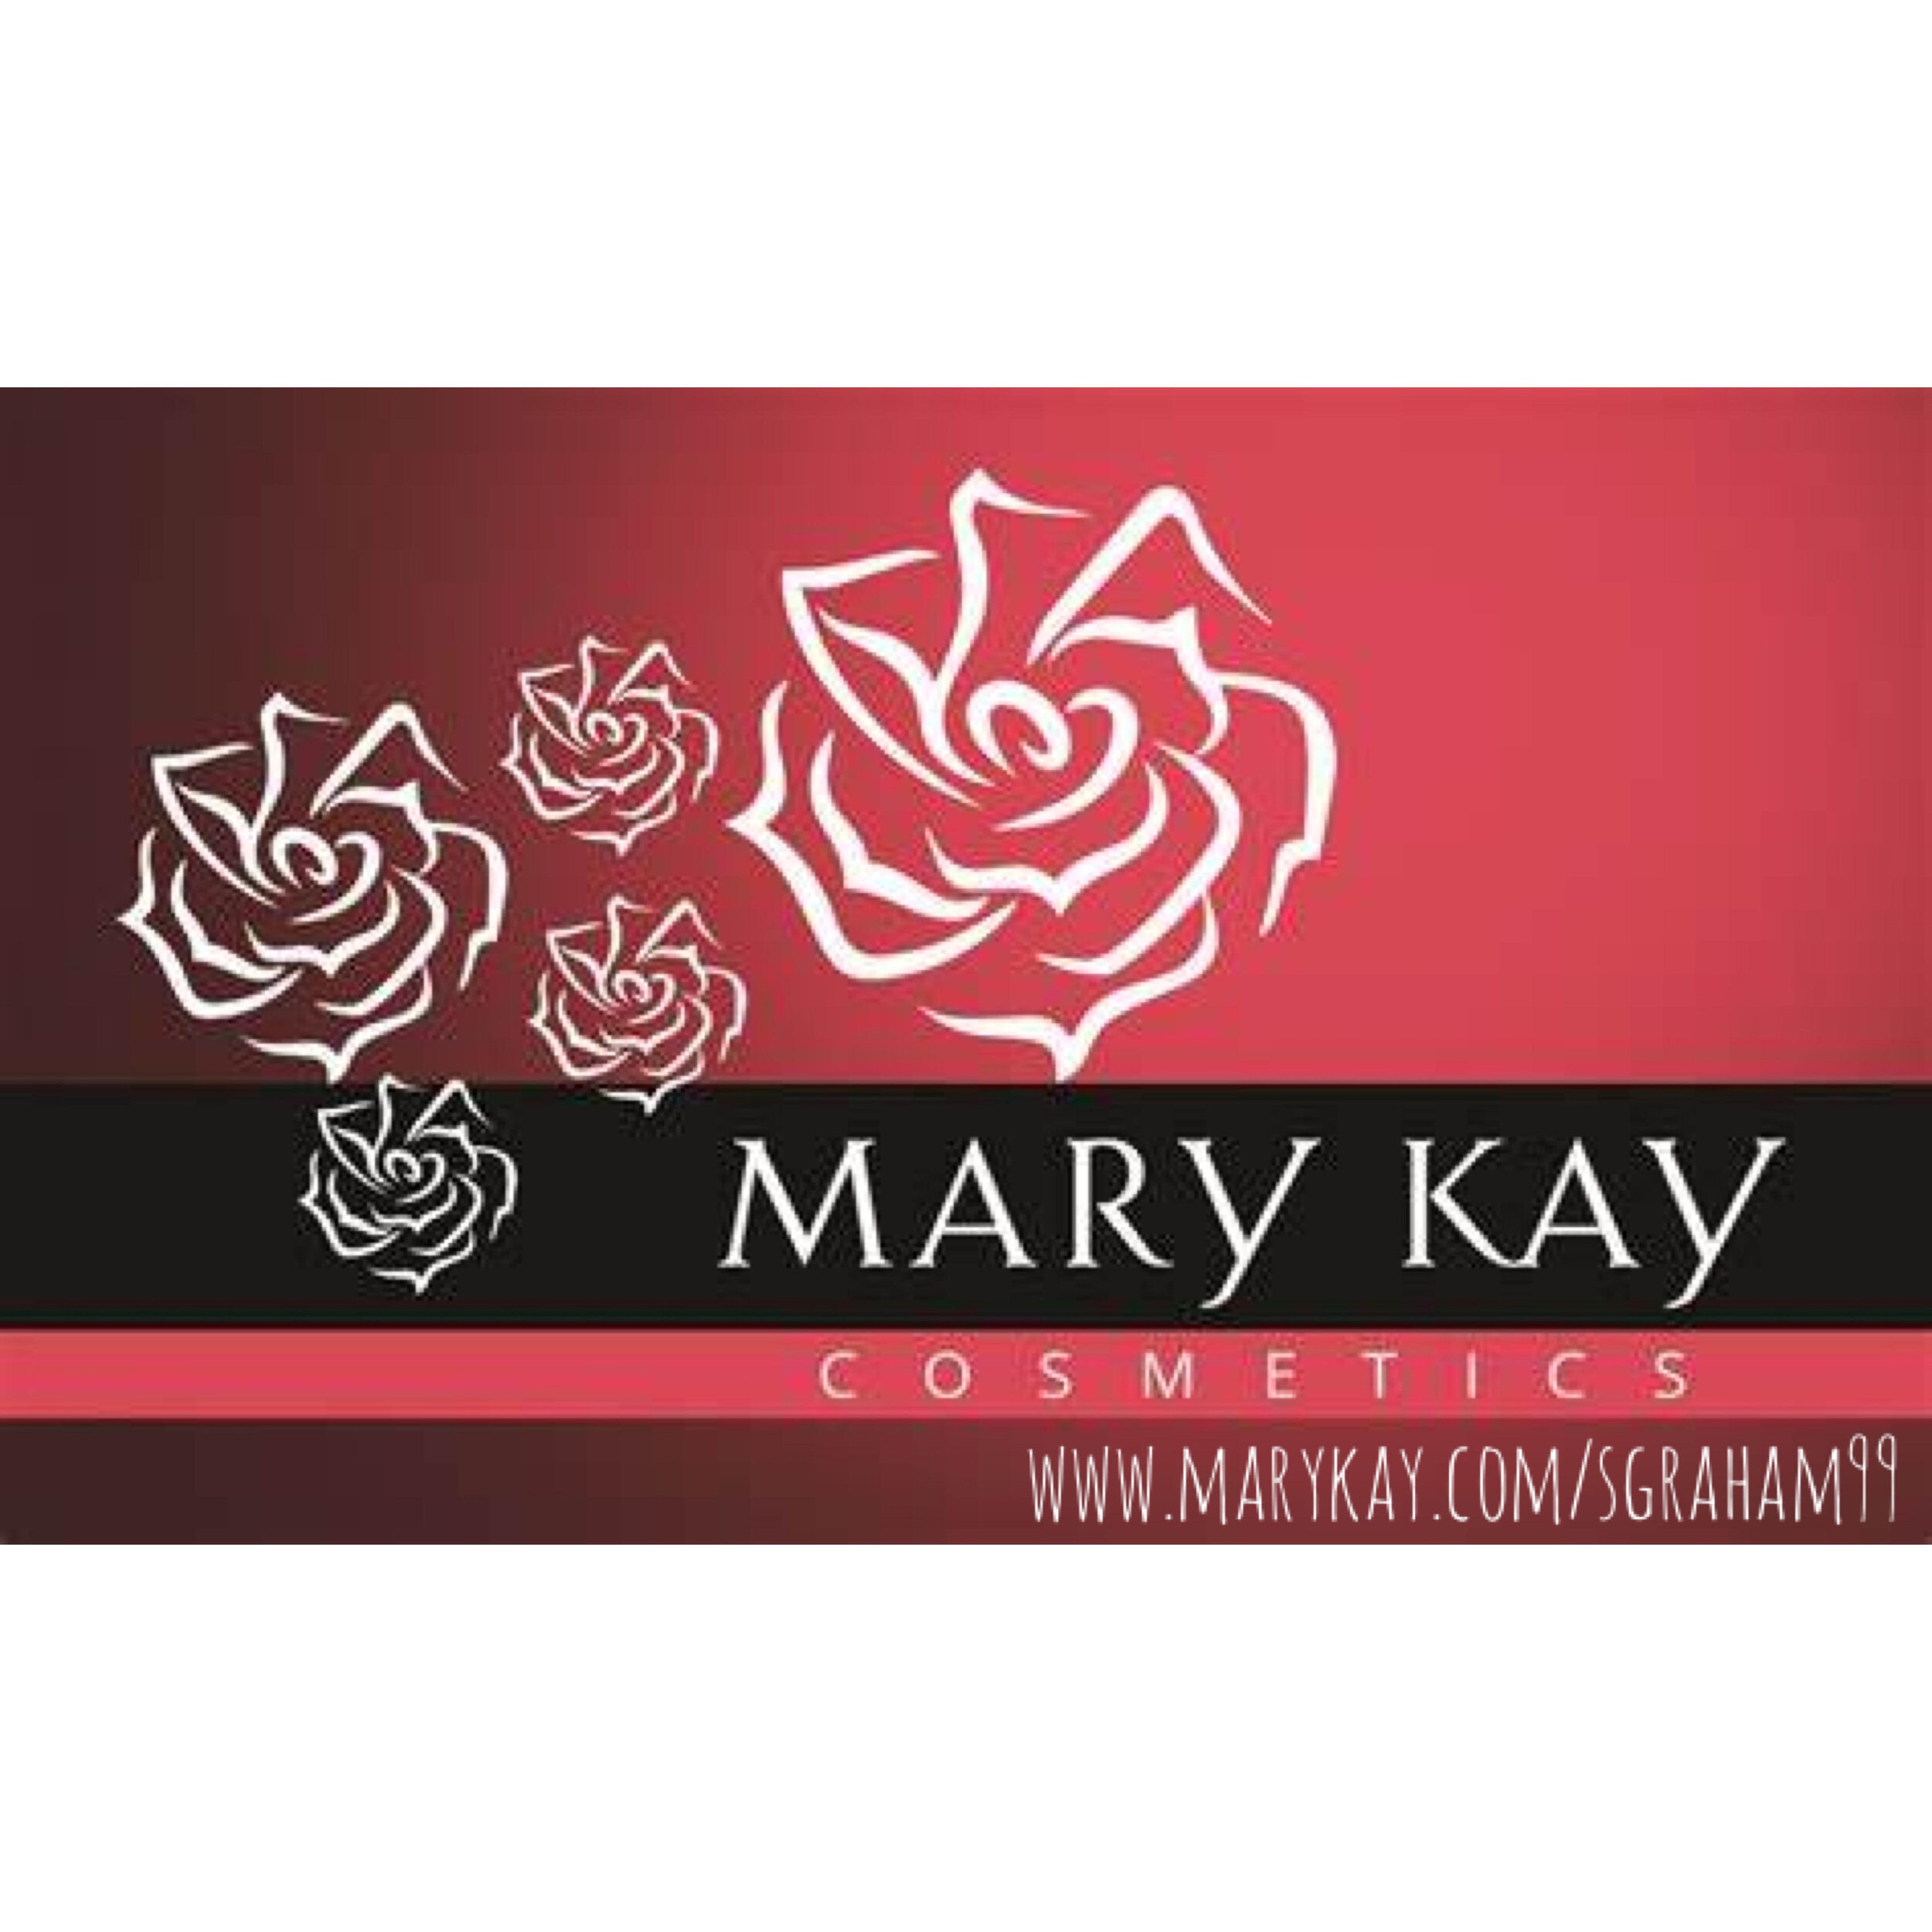 Mary Kay.jpg